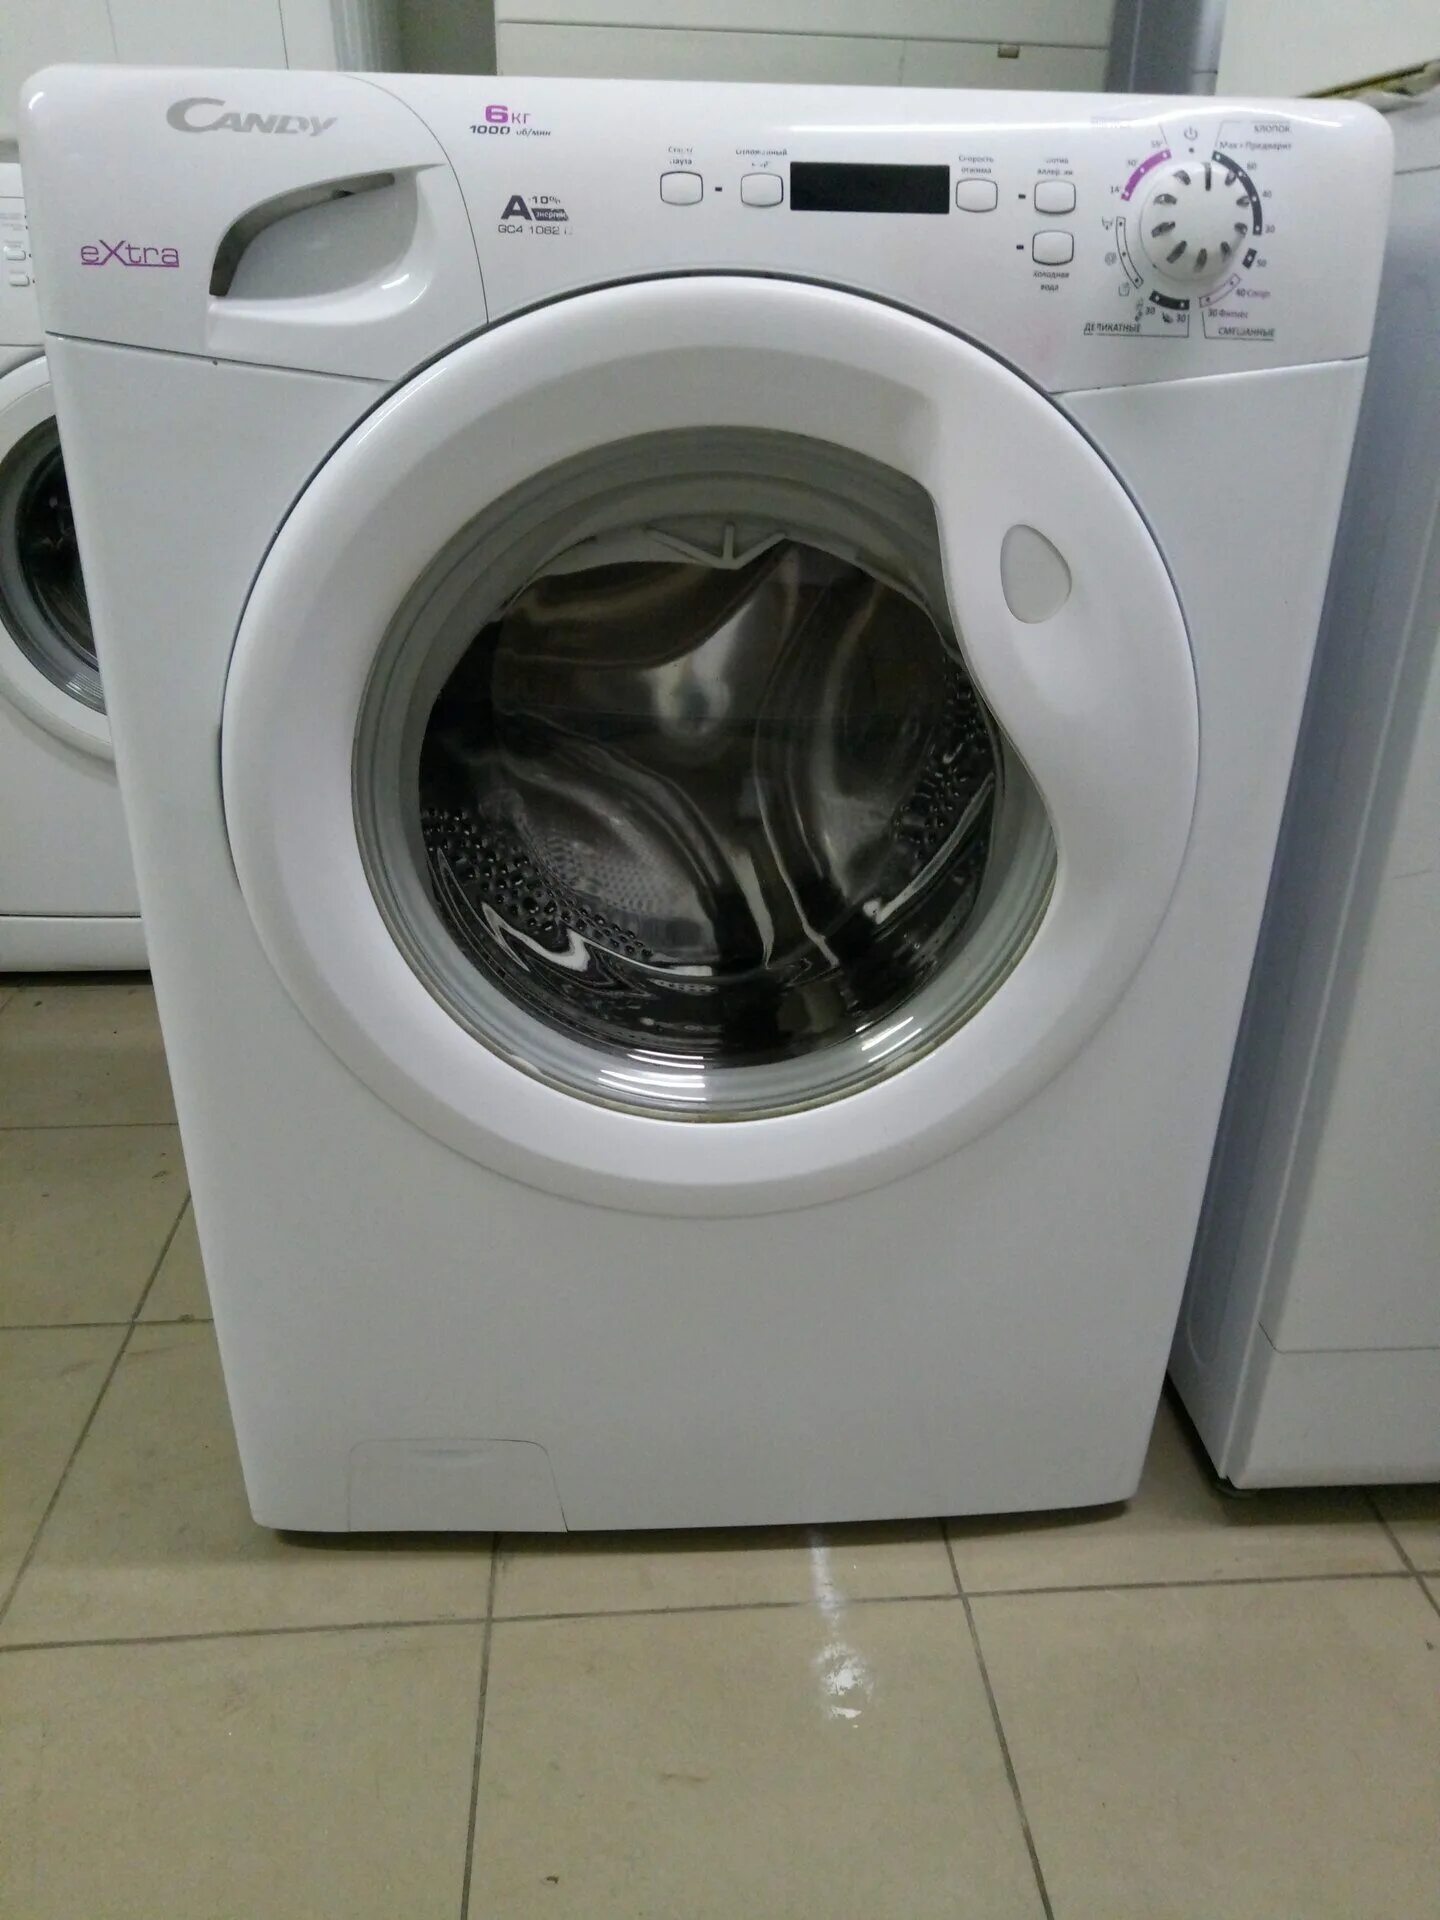 Недорогие стиральные машины candy